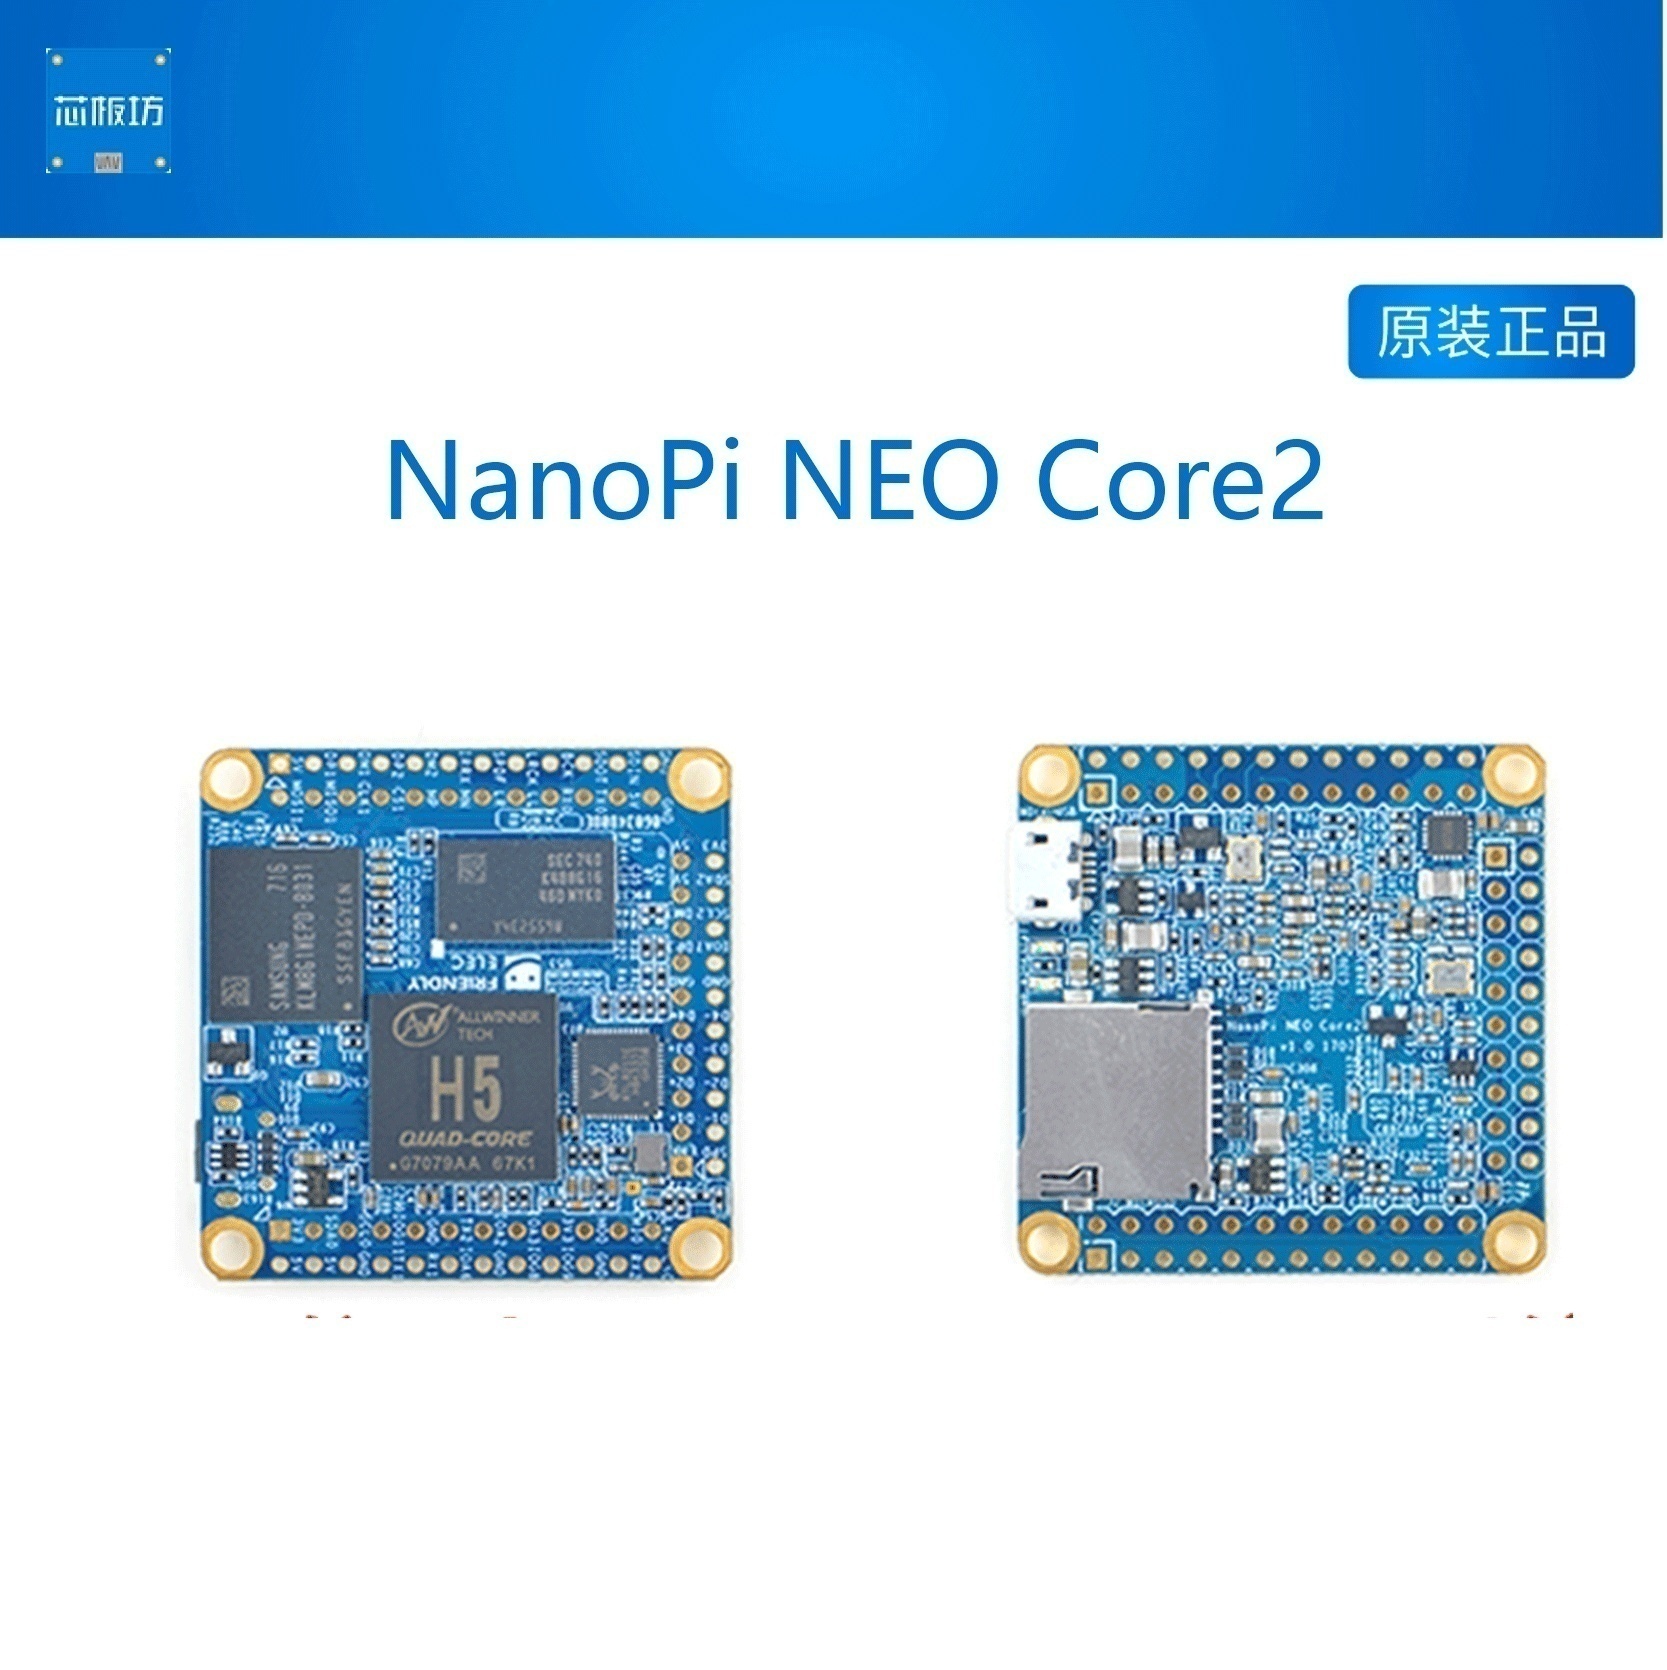 友善开源超小NEO Core Core2 全志H5,IoT开发板,运行UbuntuCore